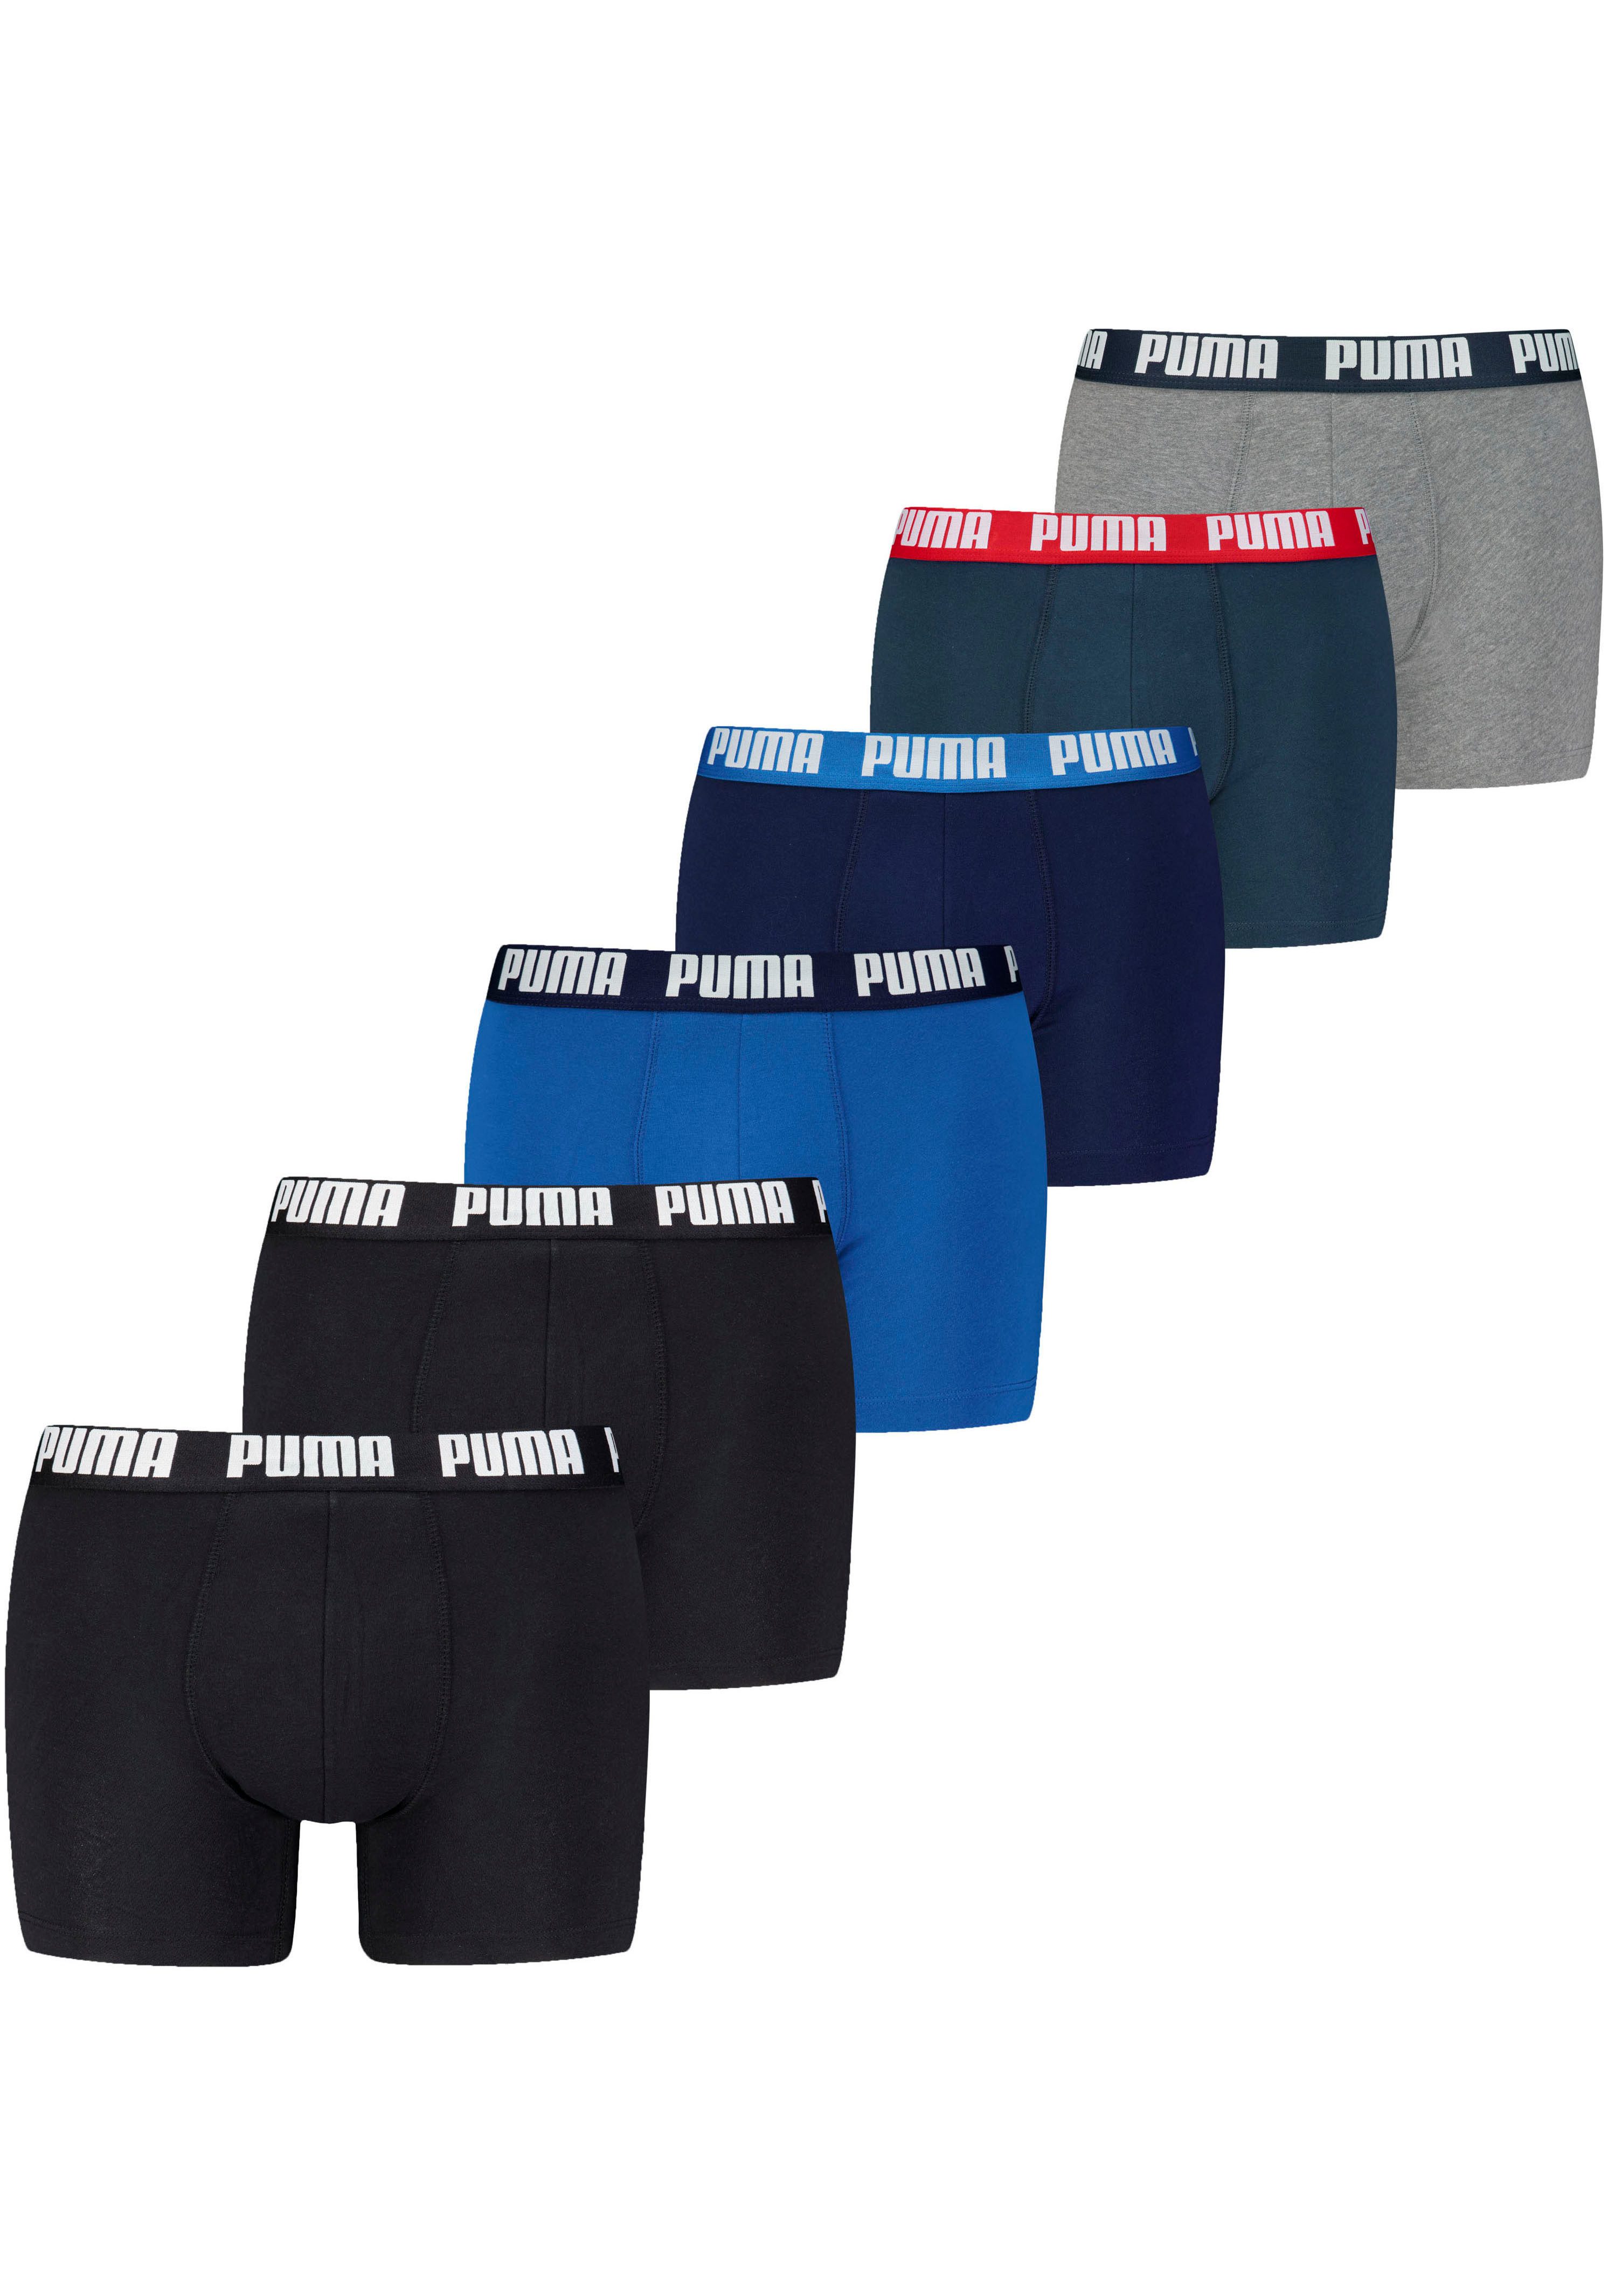 PUMA Boxer (6er Pack) mit elastischem Logobund